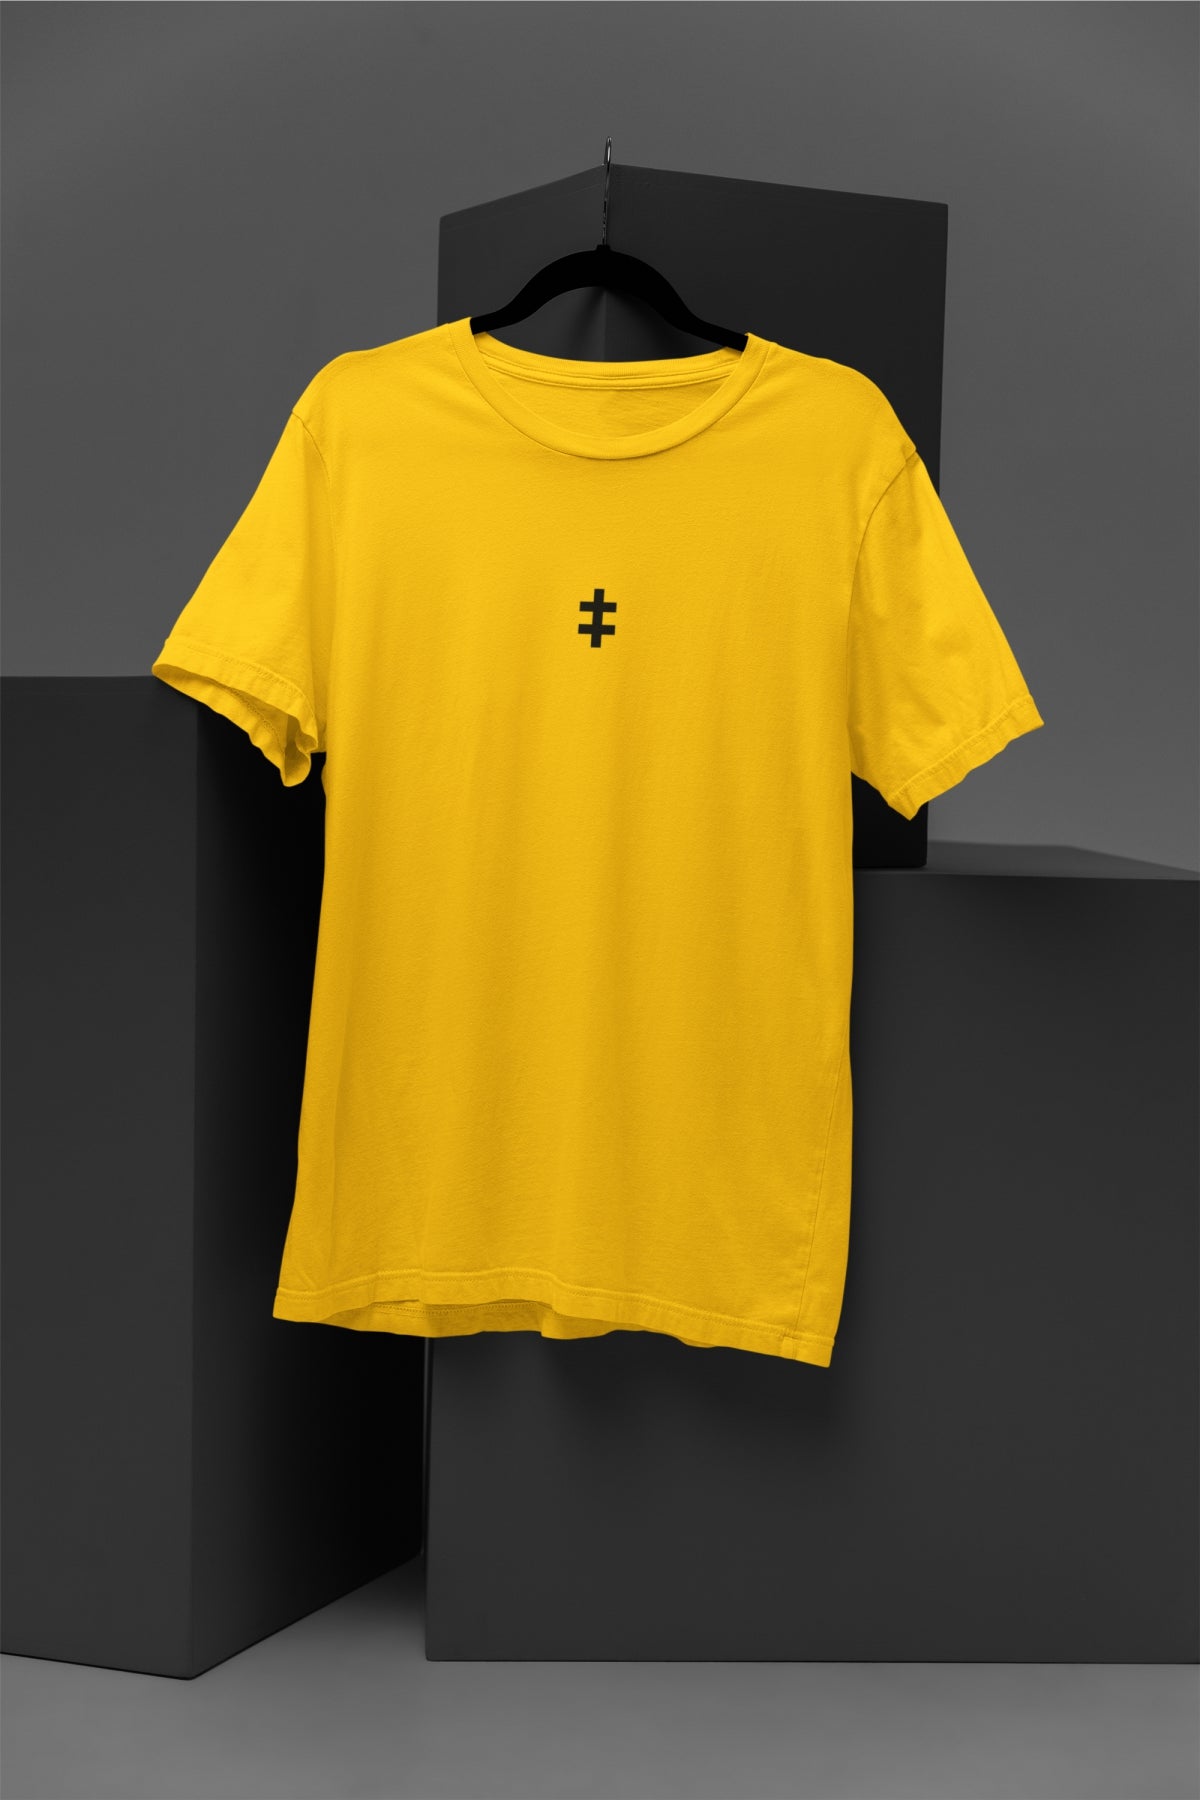 Geltoni UNISEX marškinėliai "Juodas Jogailaičių kryžius" PASKUTINIAI VIENETAI (BC e190)